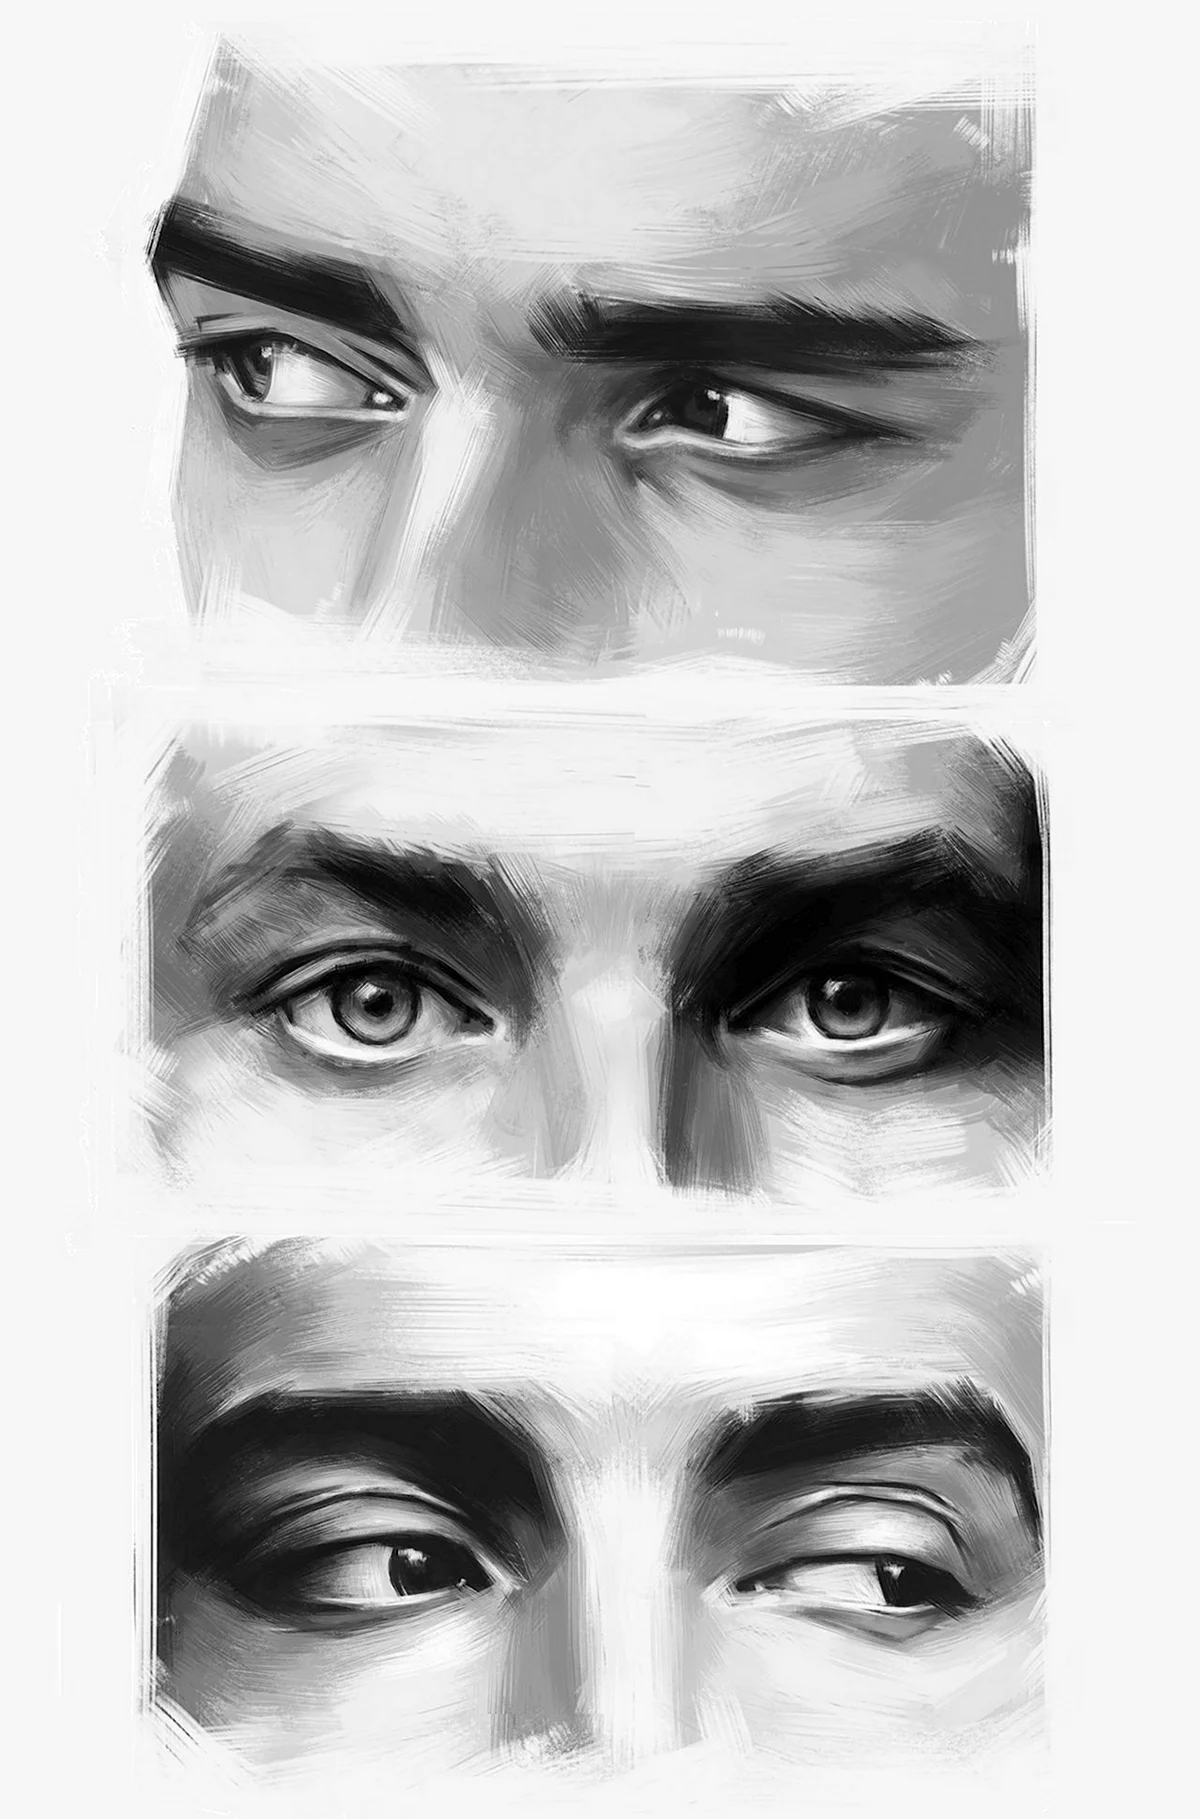 Мужские глаза рисунок